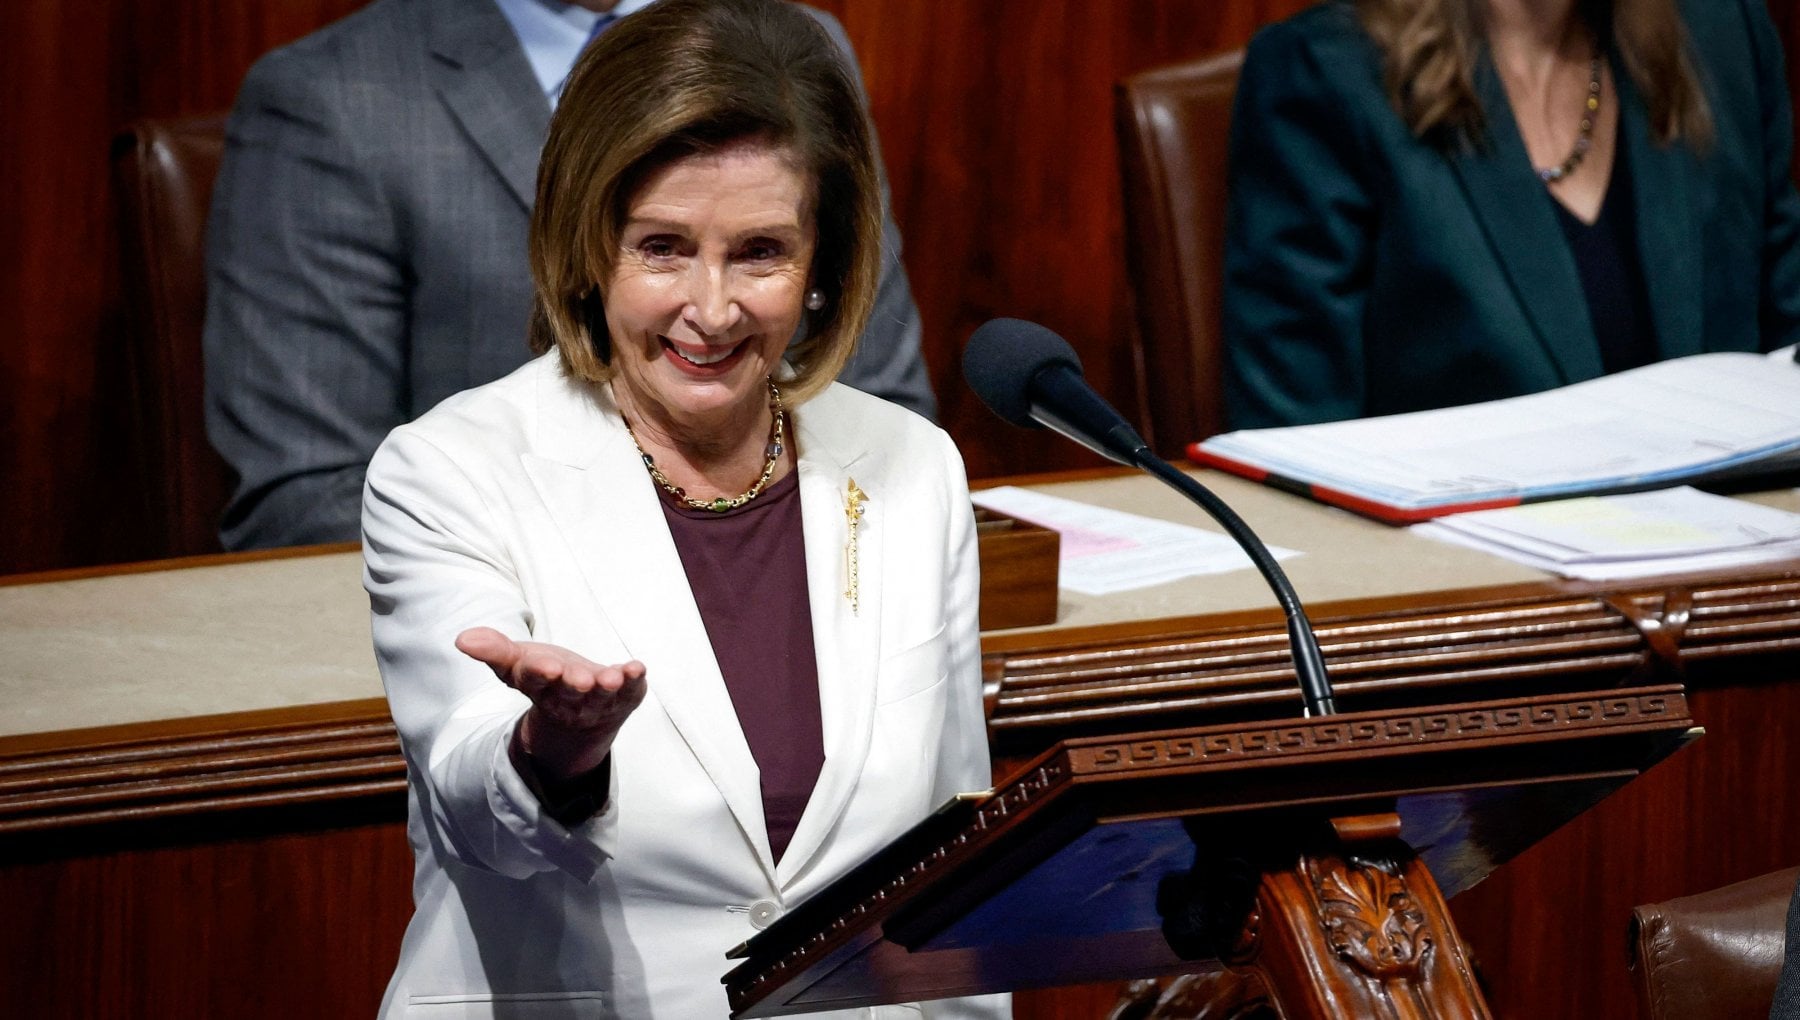 Finisce l'era Nancy Pelosi, perde il ruolo di speaker della Camera e annuncia: "Non mi ricandiderò a leader dem"